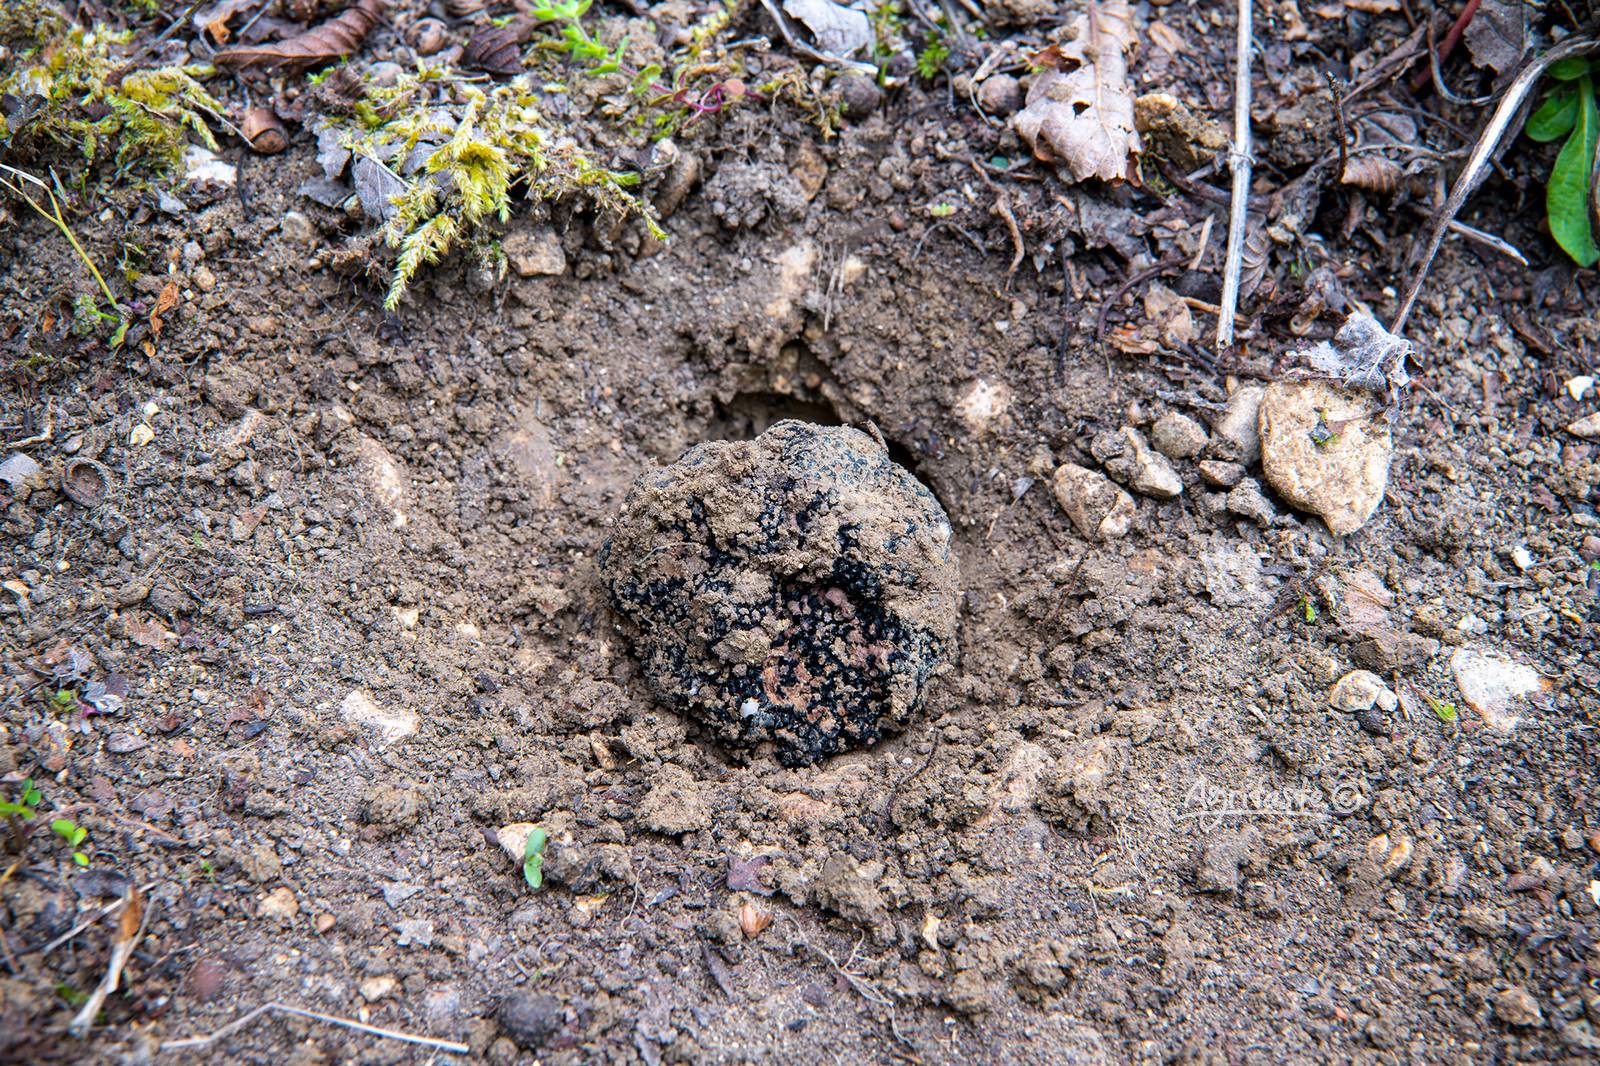 the spore truffles